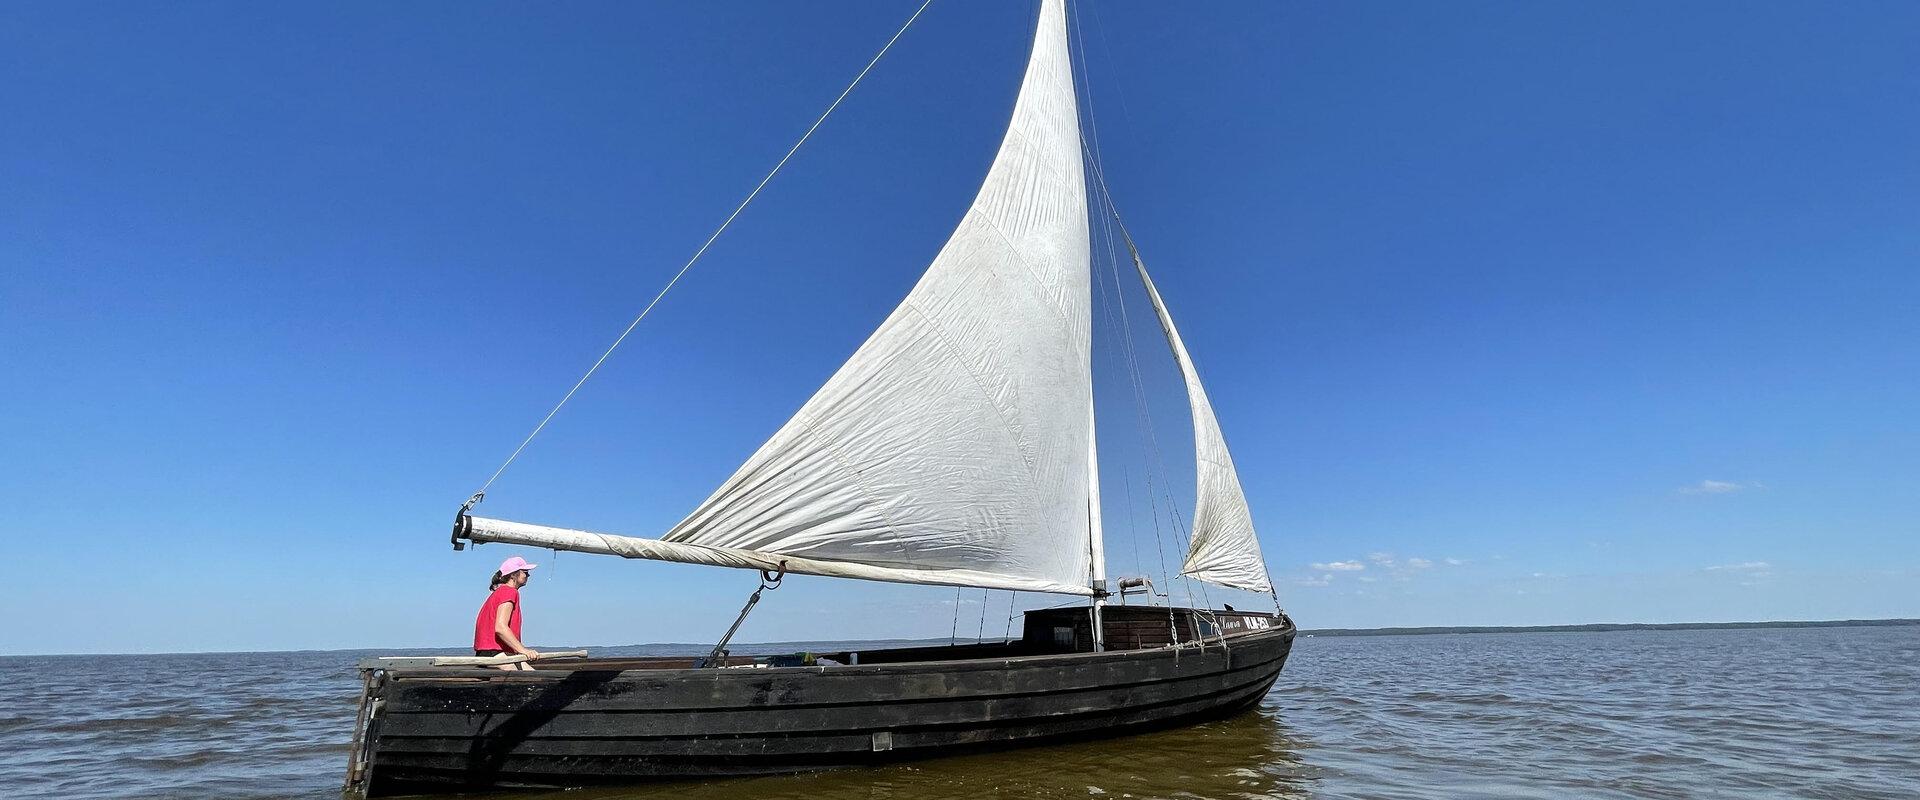 Sailing on Lake Võrtsjärv